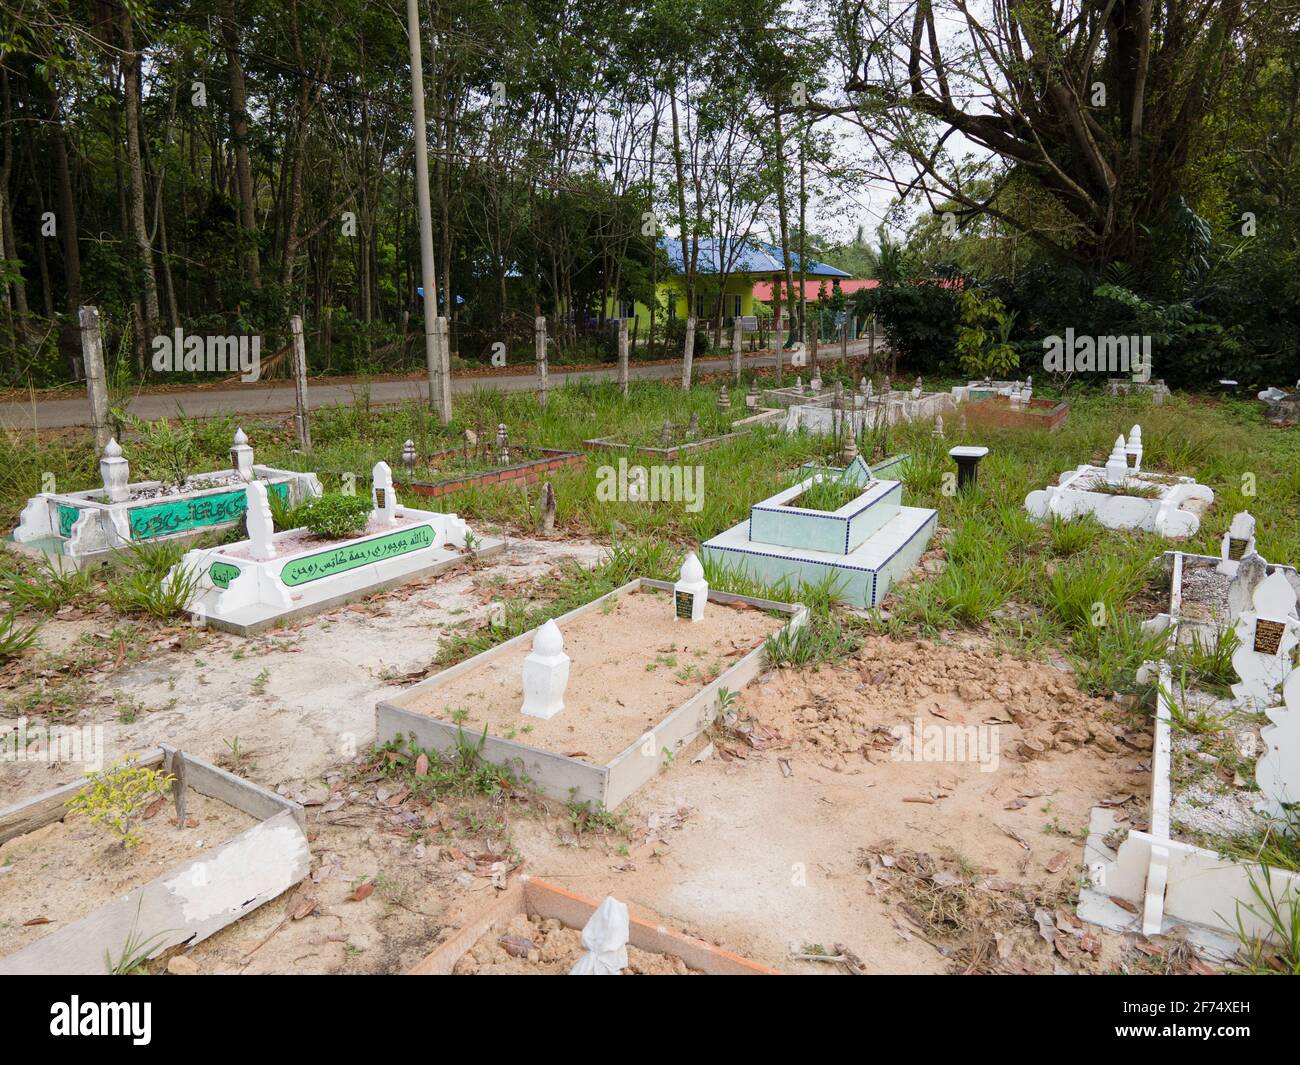 Vue sur un cimetière musulman en Malaisie. Généralement, les tombes ne sont pas disposées de façon systématique, mais la tête de la janazah sera toujours face à la kibla Banque D'Images